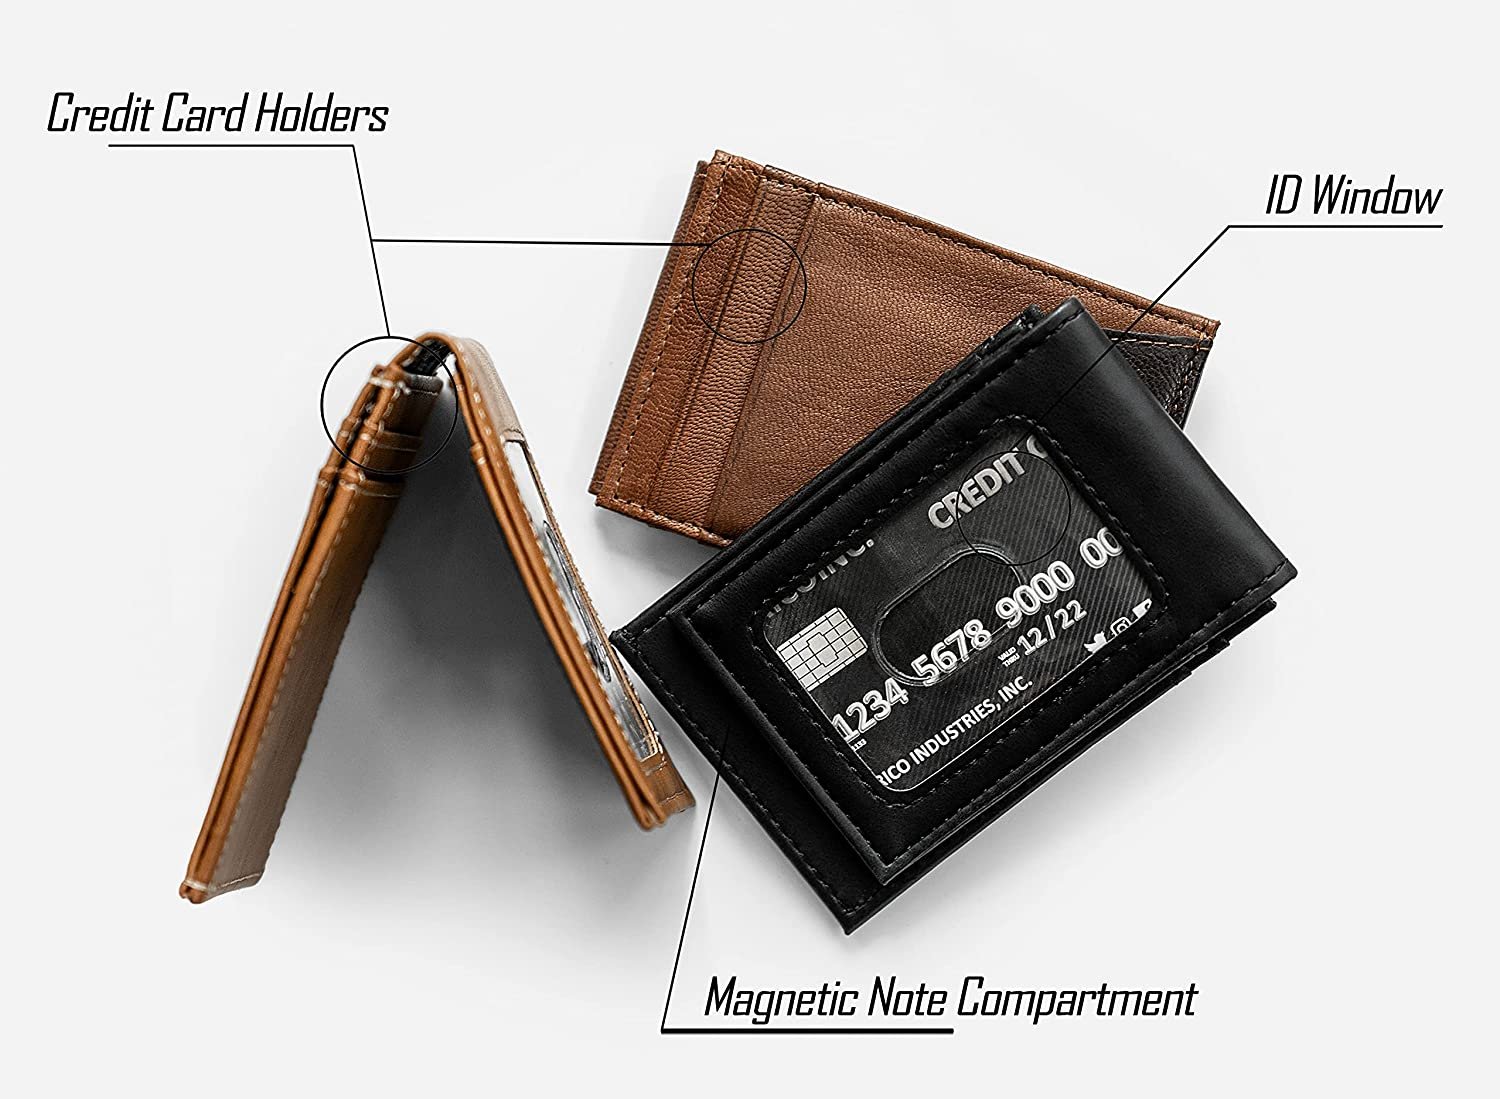 Tampa Bay Lightning Premium Brown Leather Wallet, Front Pocket Magnetic Money Clip, Laser Engraved, Vegan